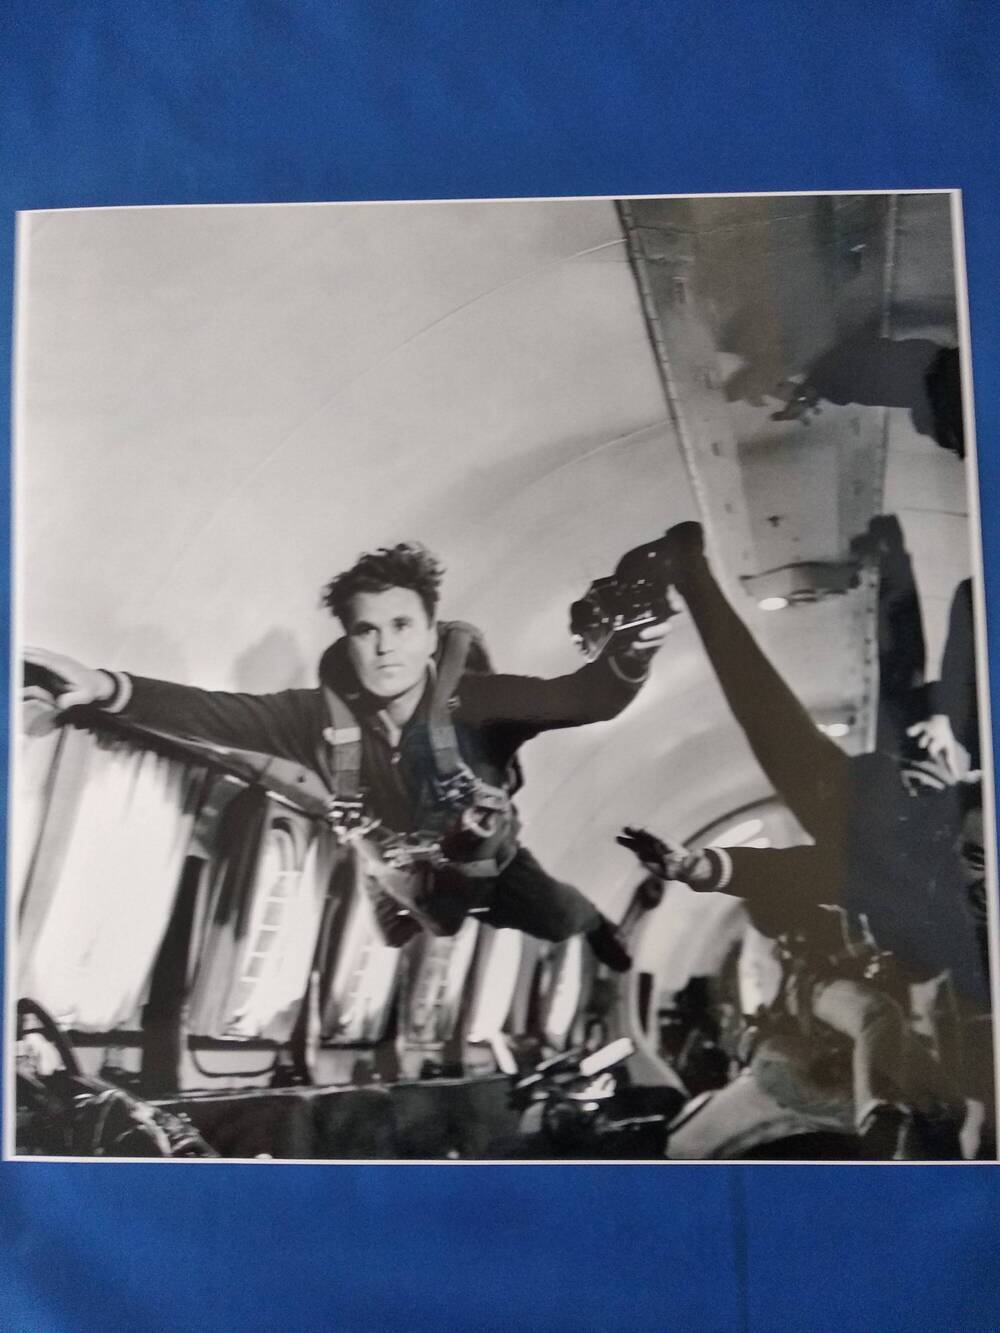 Фотография сюжетная черно-белая космонавта В.Шаталова во время тренировки в невесомости на самолете.